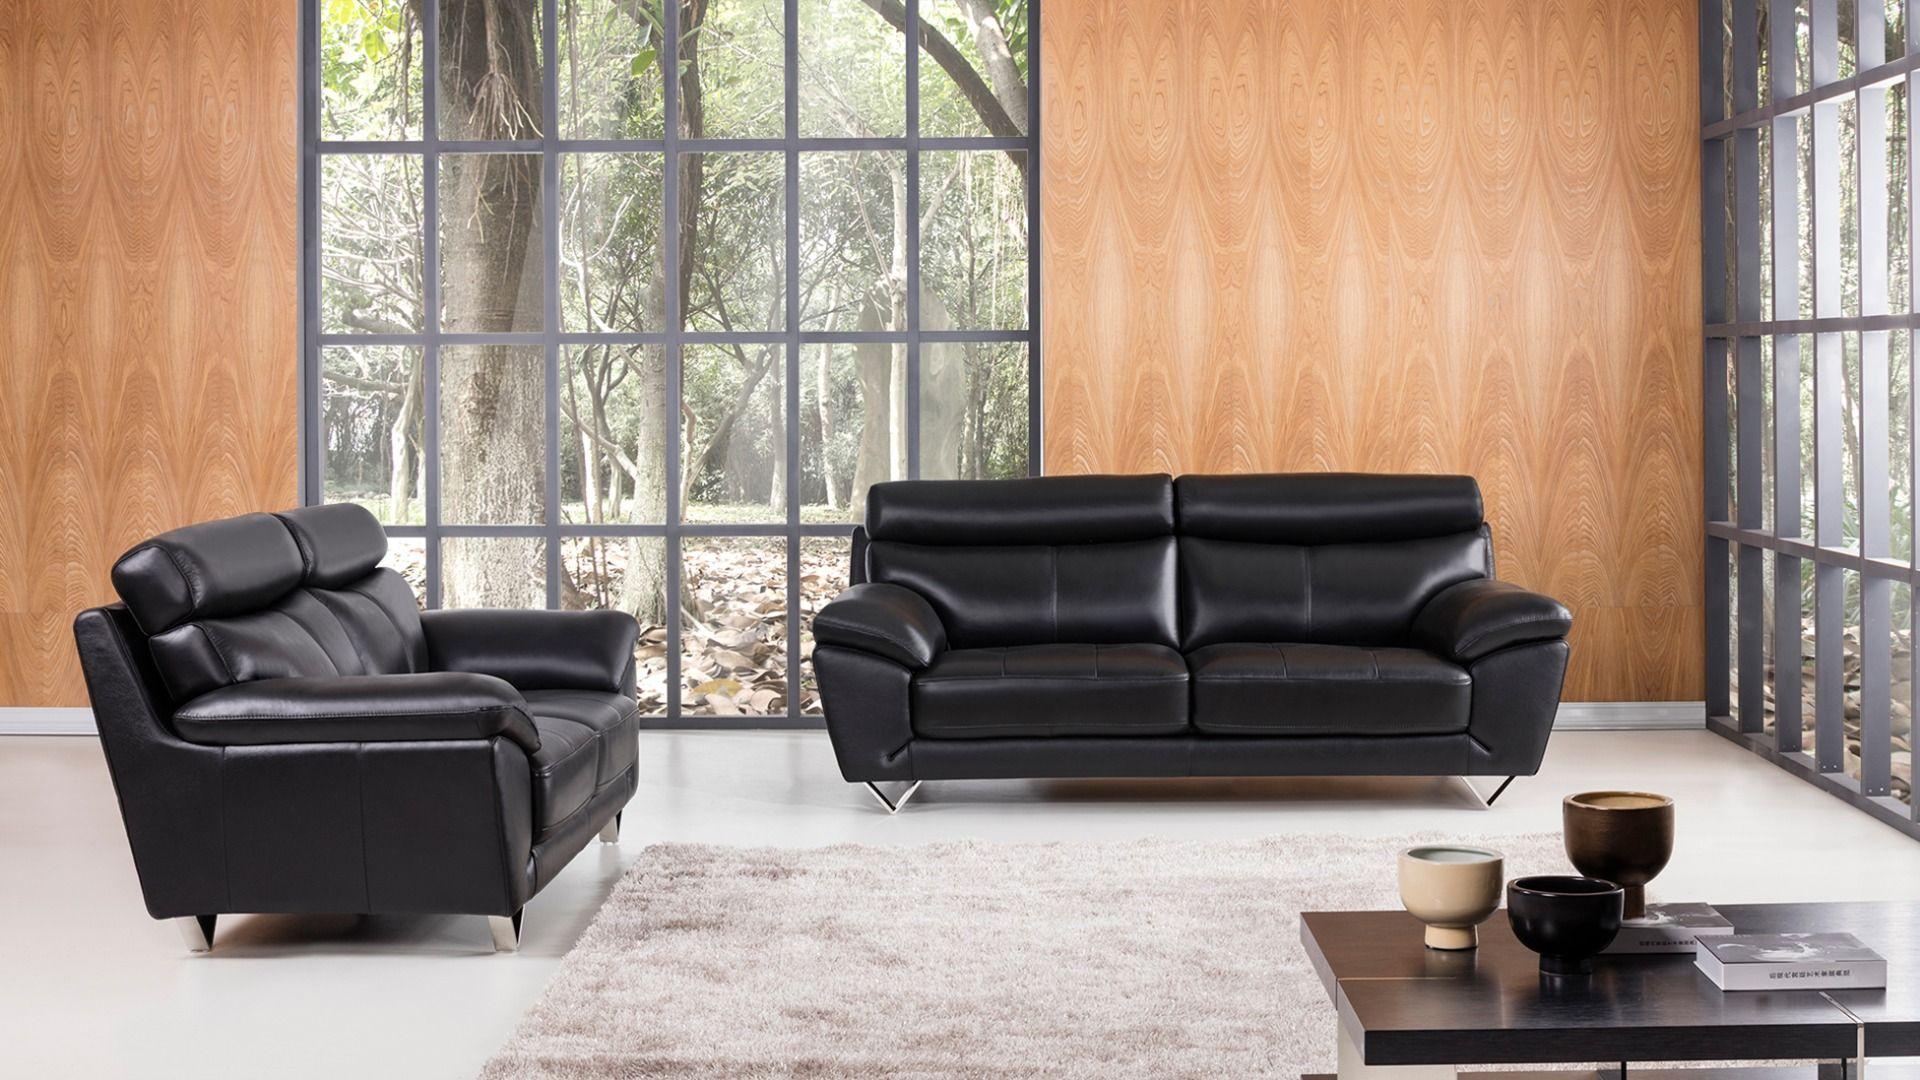 

                    
American Eagle Furniture EK078-BK-SF Sofa Black Italian Leather Purchase 
